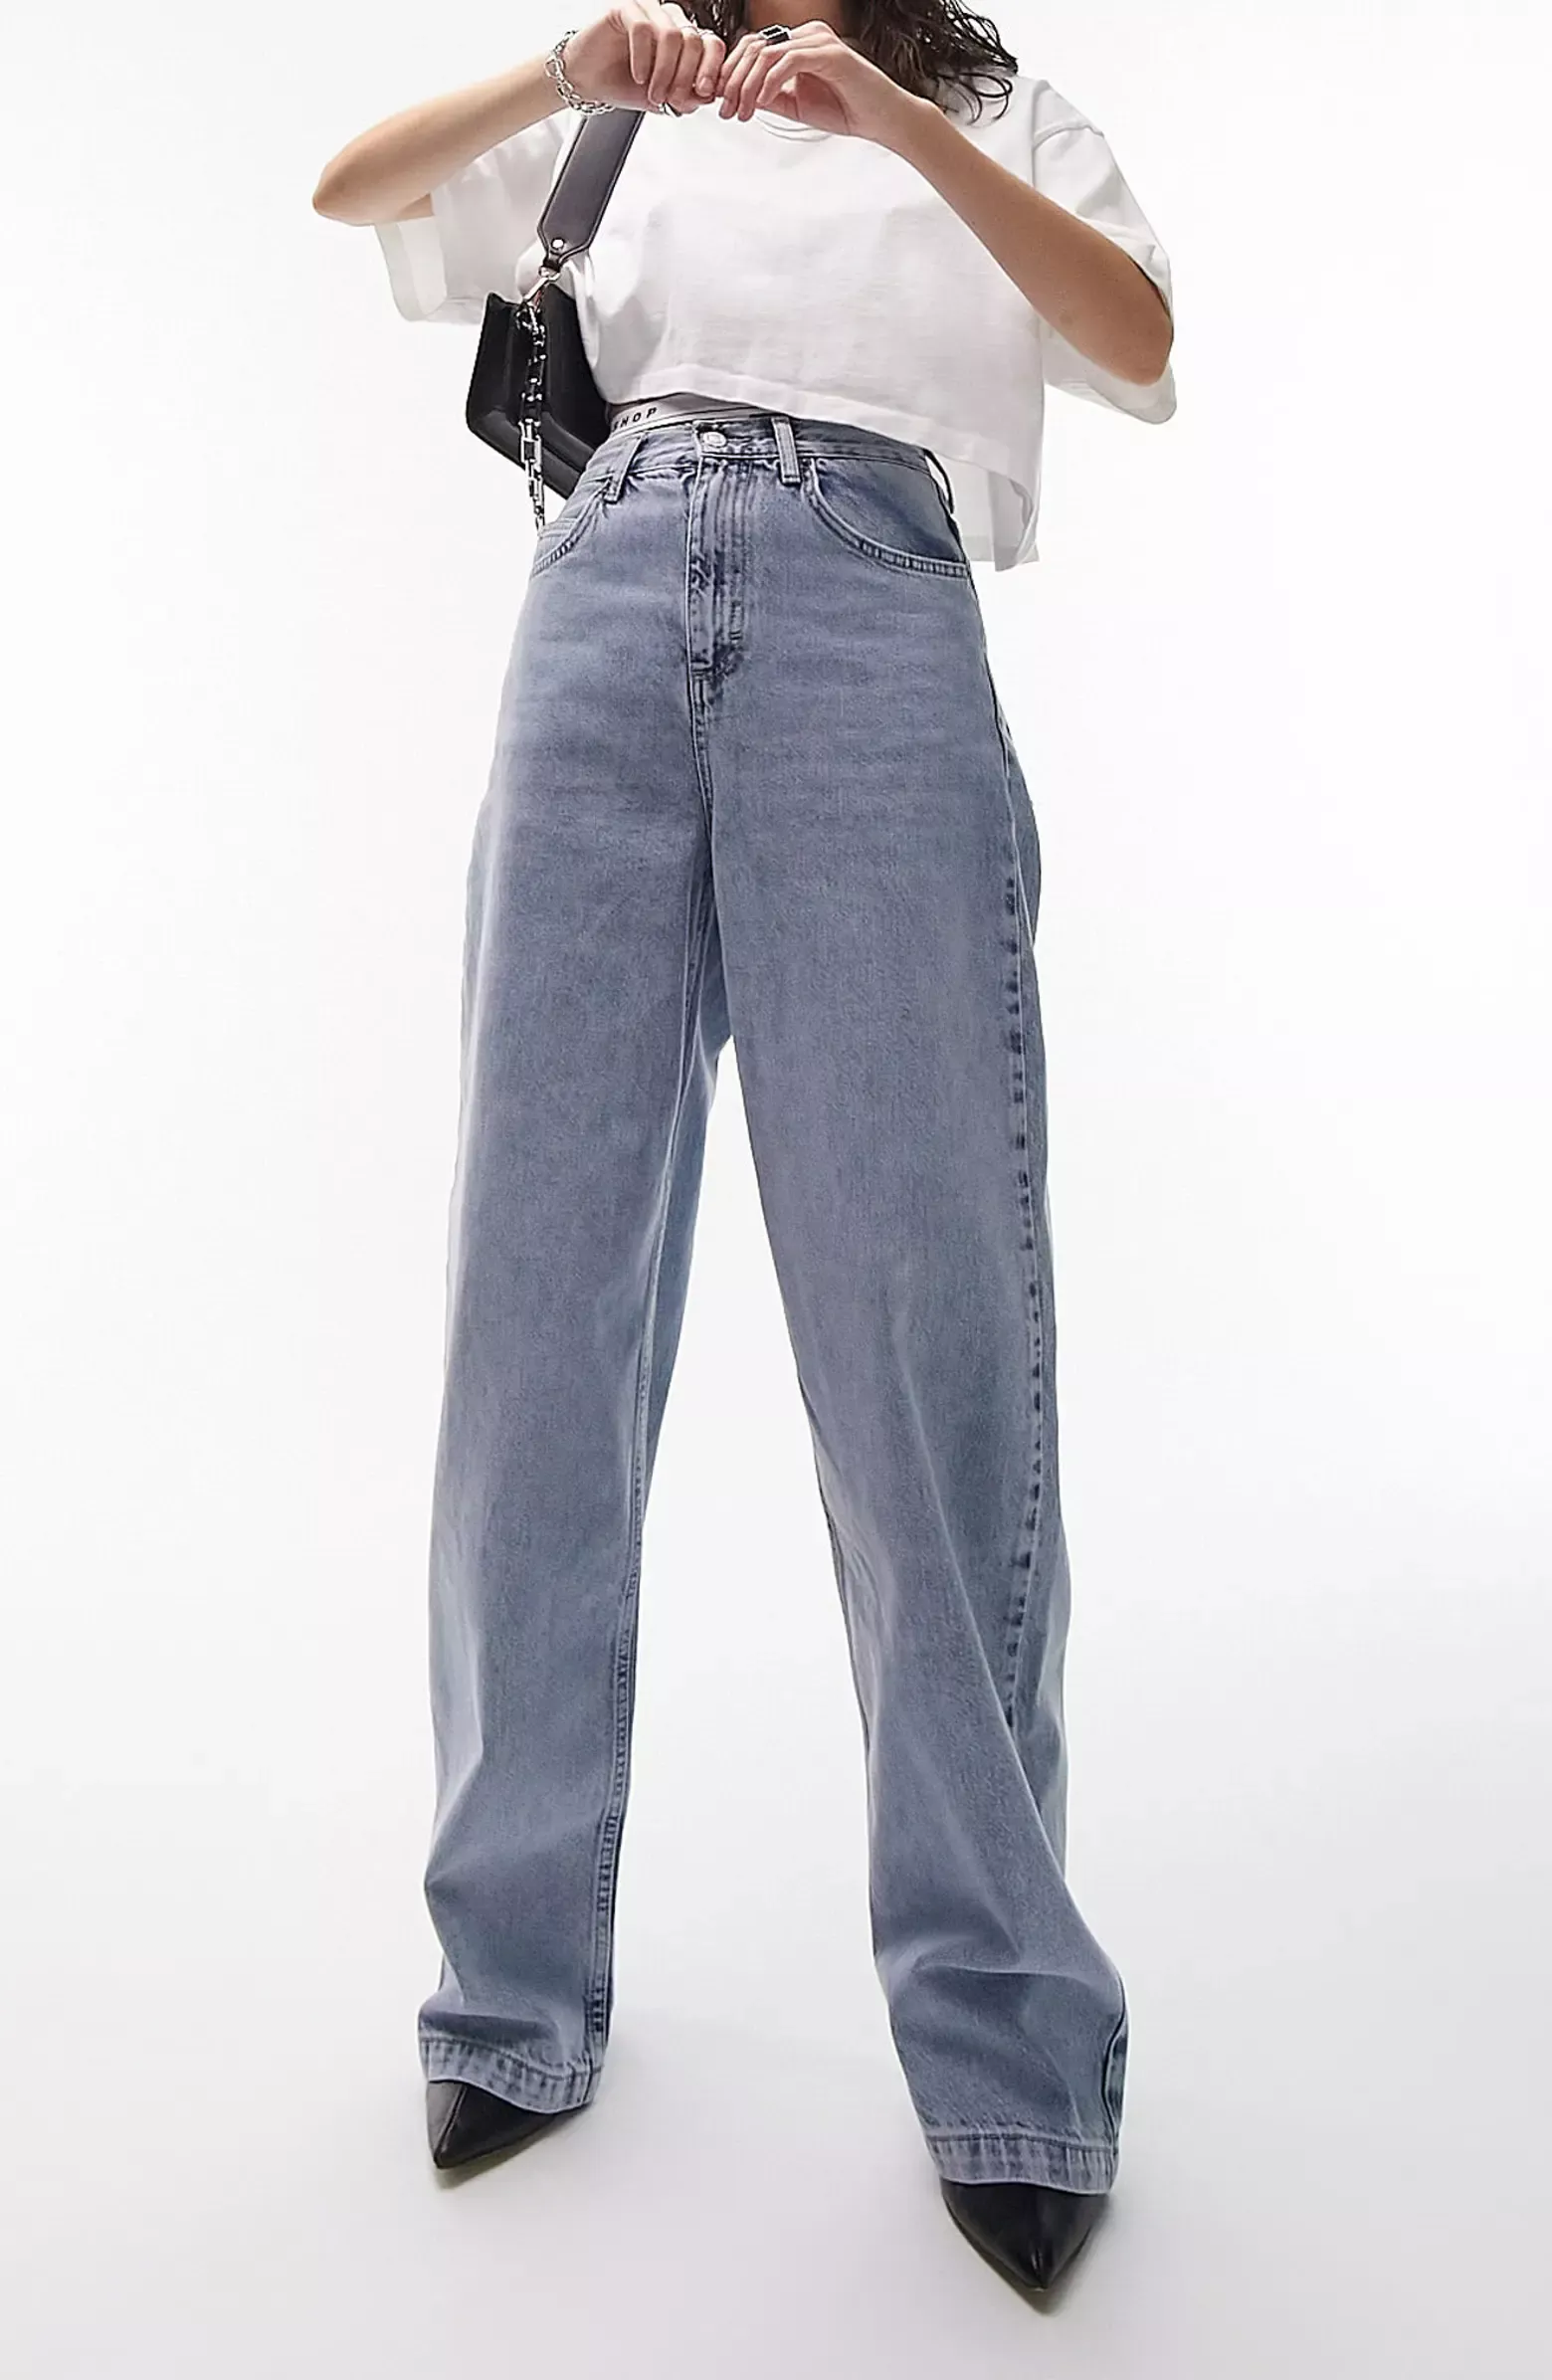 DTT Grace balloon leg jeans in … curated on LTK  Mom jeans outfit summer,  Mom jeans outfit, Jeans outfit winter